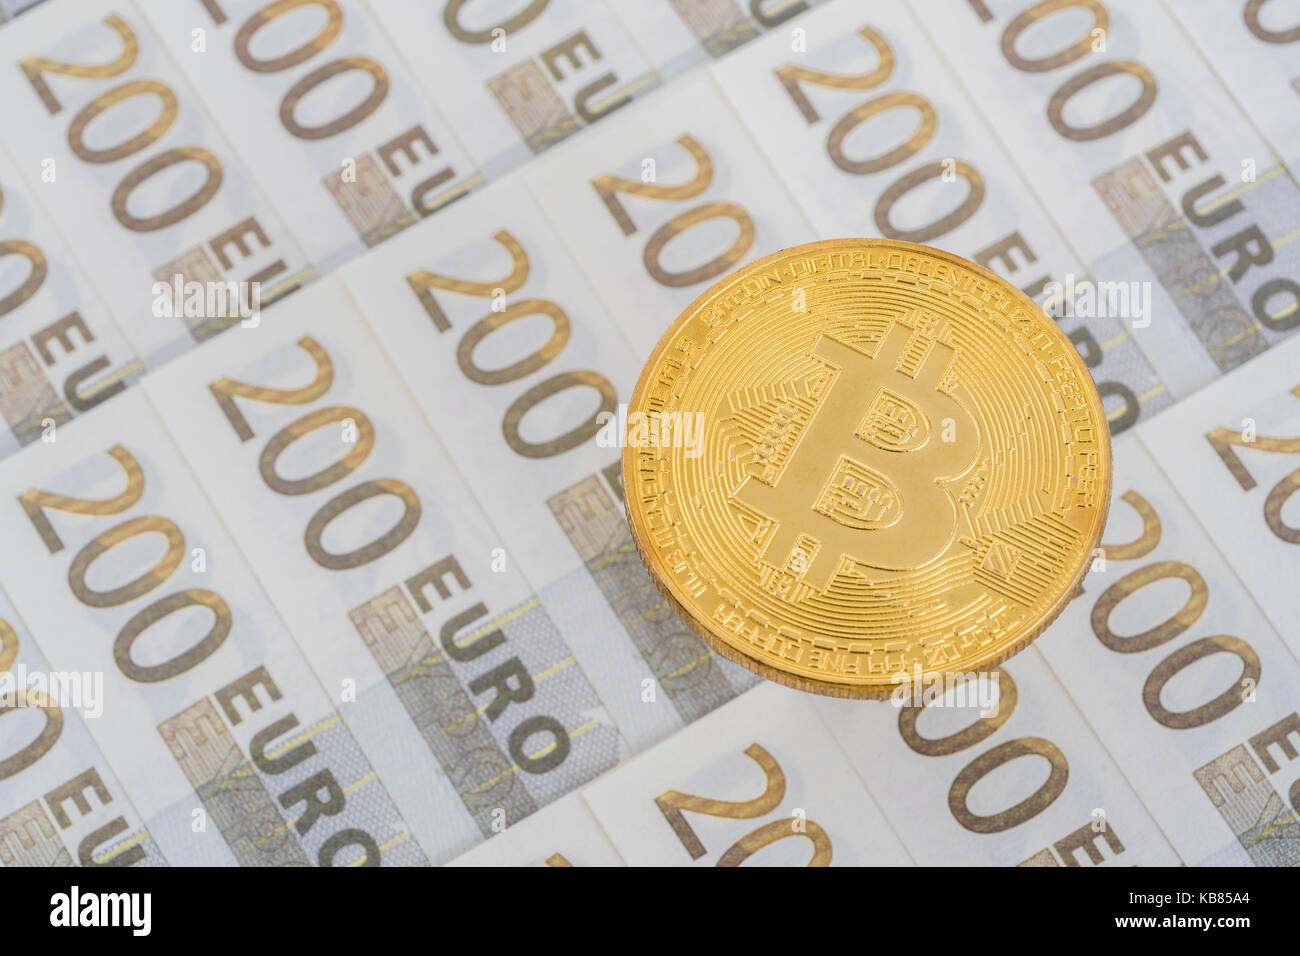 Gold Bitcoin on 200 Euro banknote. For European Digital Single Market, Bitcoin-Euro exchange rate, EU e-commerce, EU Bitcoin regulation, Bitcoin surge Stock Photo